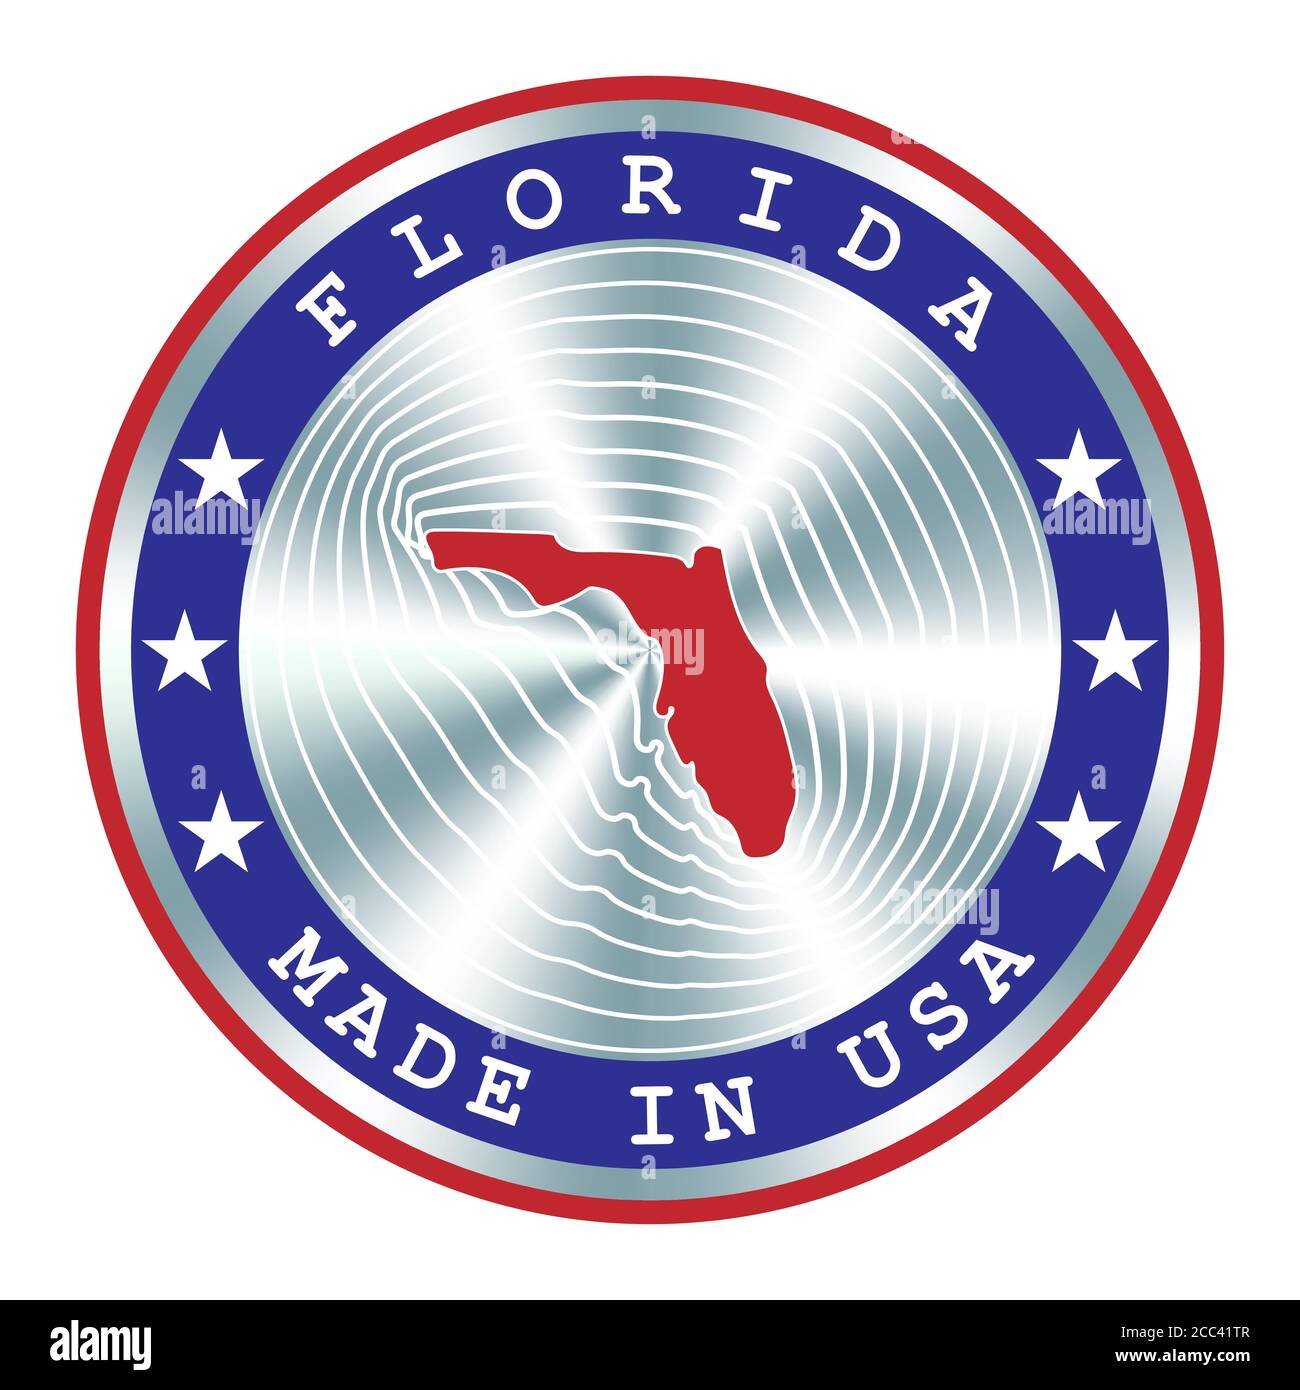 Made in Florida lokale Produktion Schild, Aufkleber, Siegel, Stempel.  Rundes Hologramm-Schild für Etikettendesign und nationales USA-Marketing  Stock-Vektorgrafik - Alamy